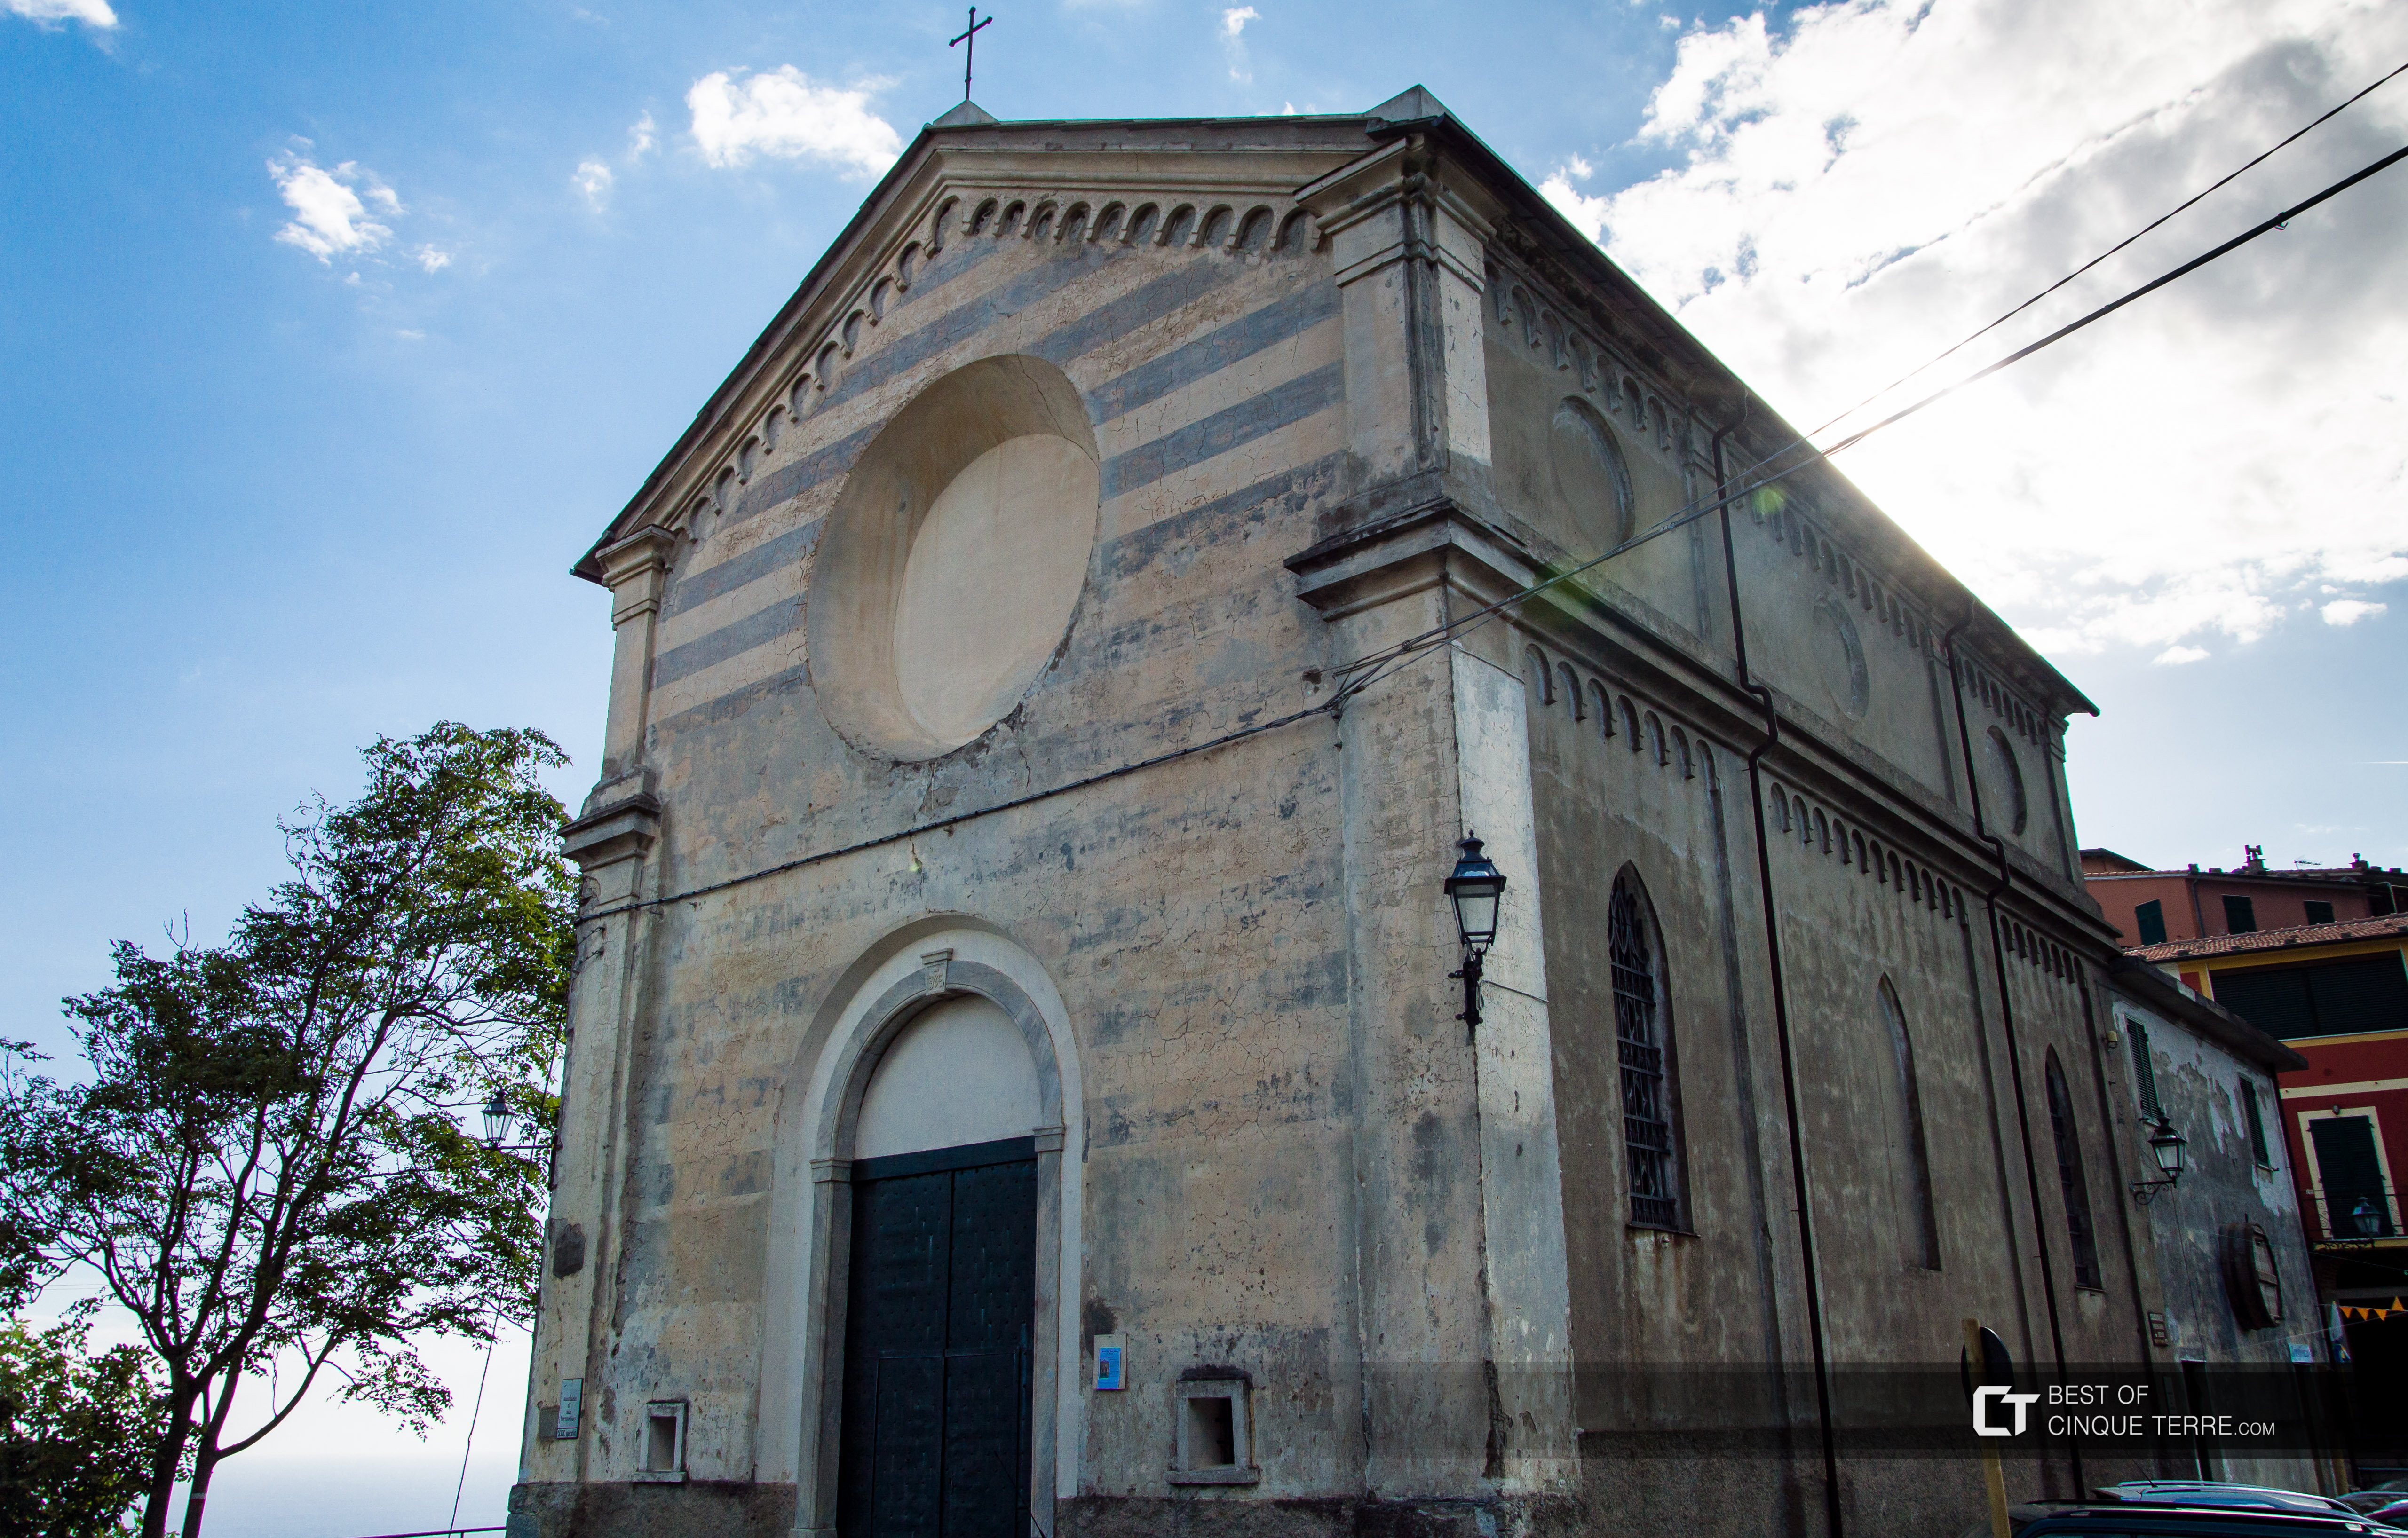 The sanctuary of Nostra Signora delle Grazie in San Bernardino, Vernazza, Cinque Terre, Italy